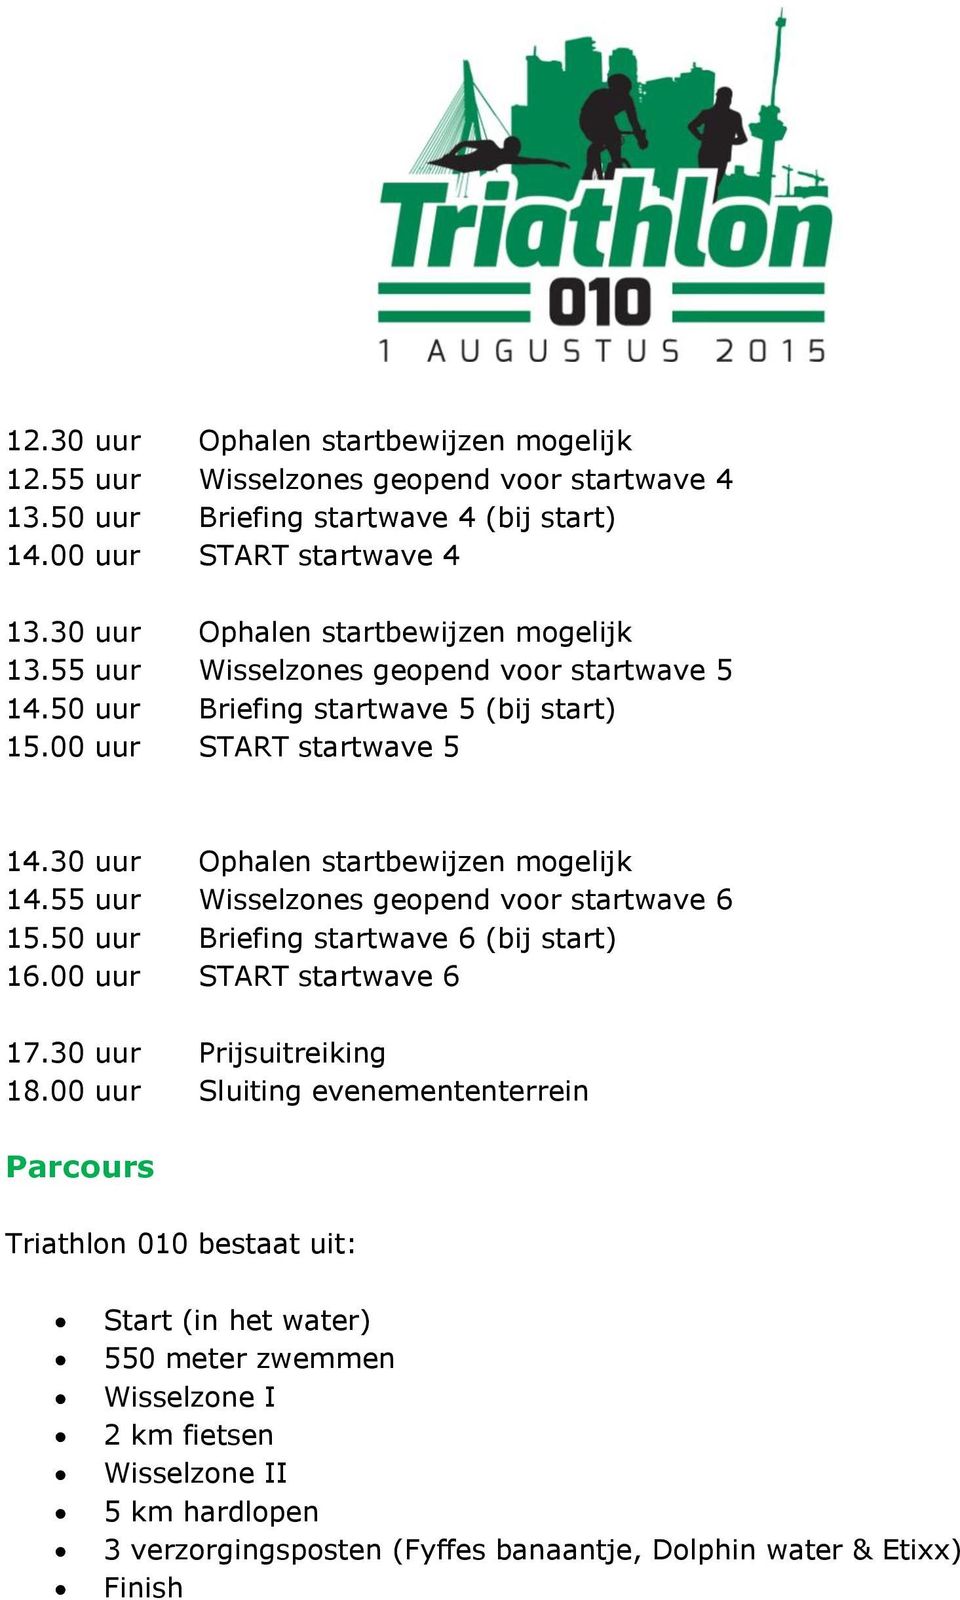 30 uur Ophalen startbewijzen mogelijk 14.55 uur Wisselzones geopend voor startwave 6 15.50 uur Briefing startwave 6 (bij start) 16.00 uur START startwave 6 17.30 uur Prijsuitreiking 18.